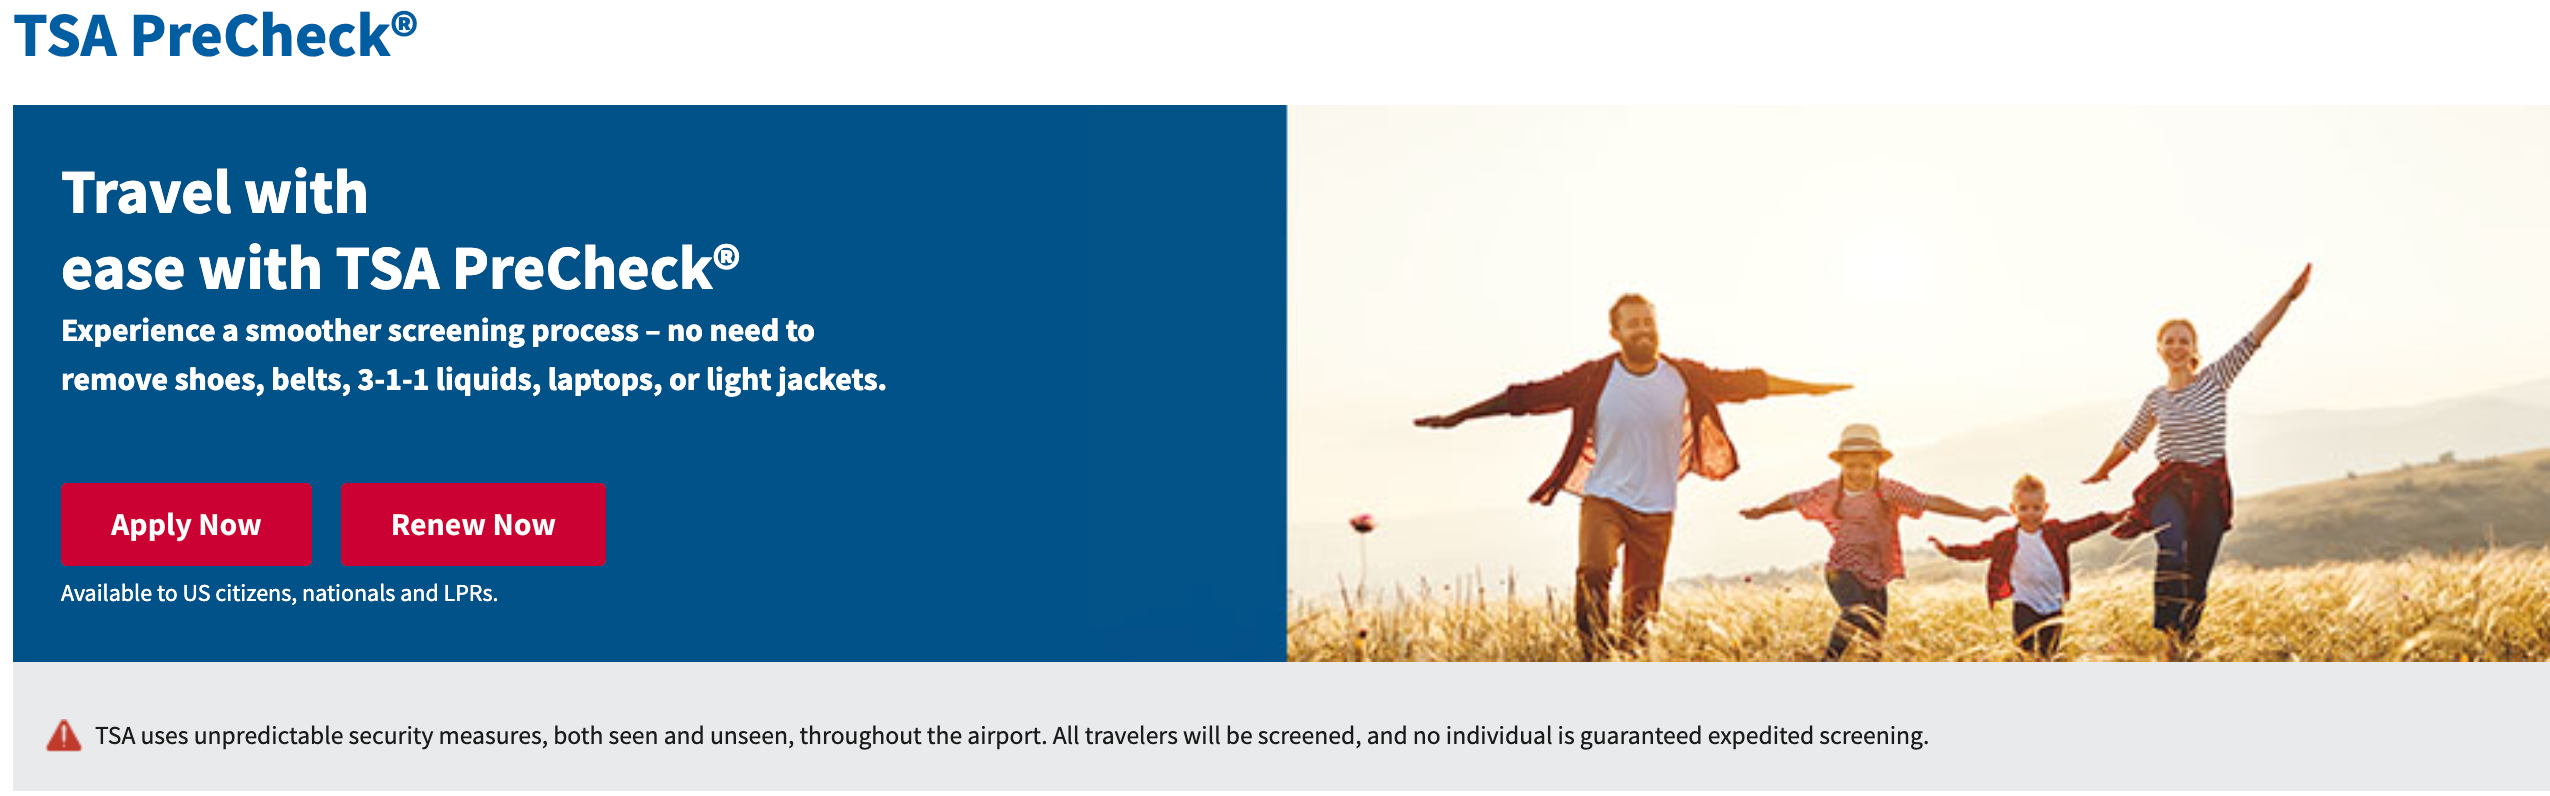 Screenshot of TSA PreCheck message from website